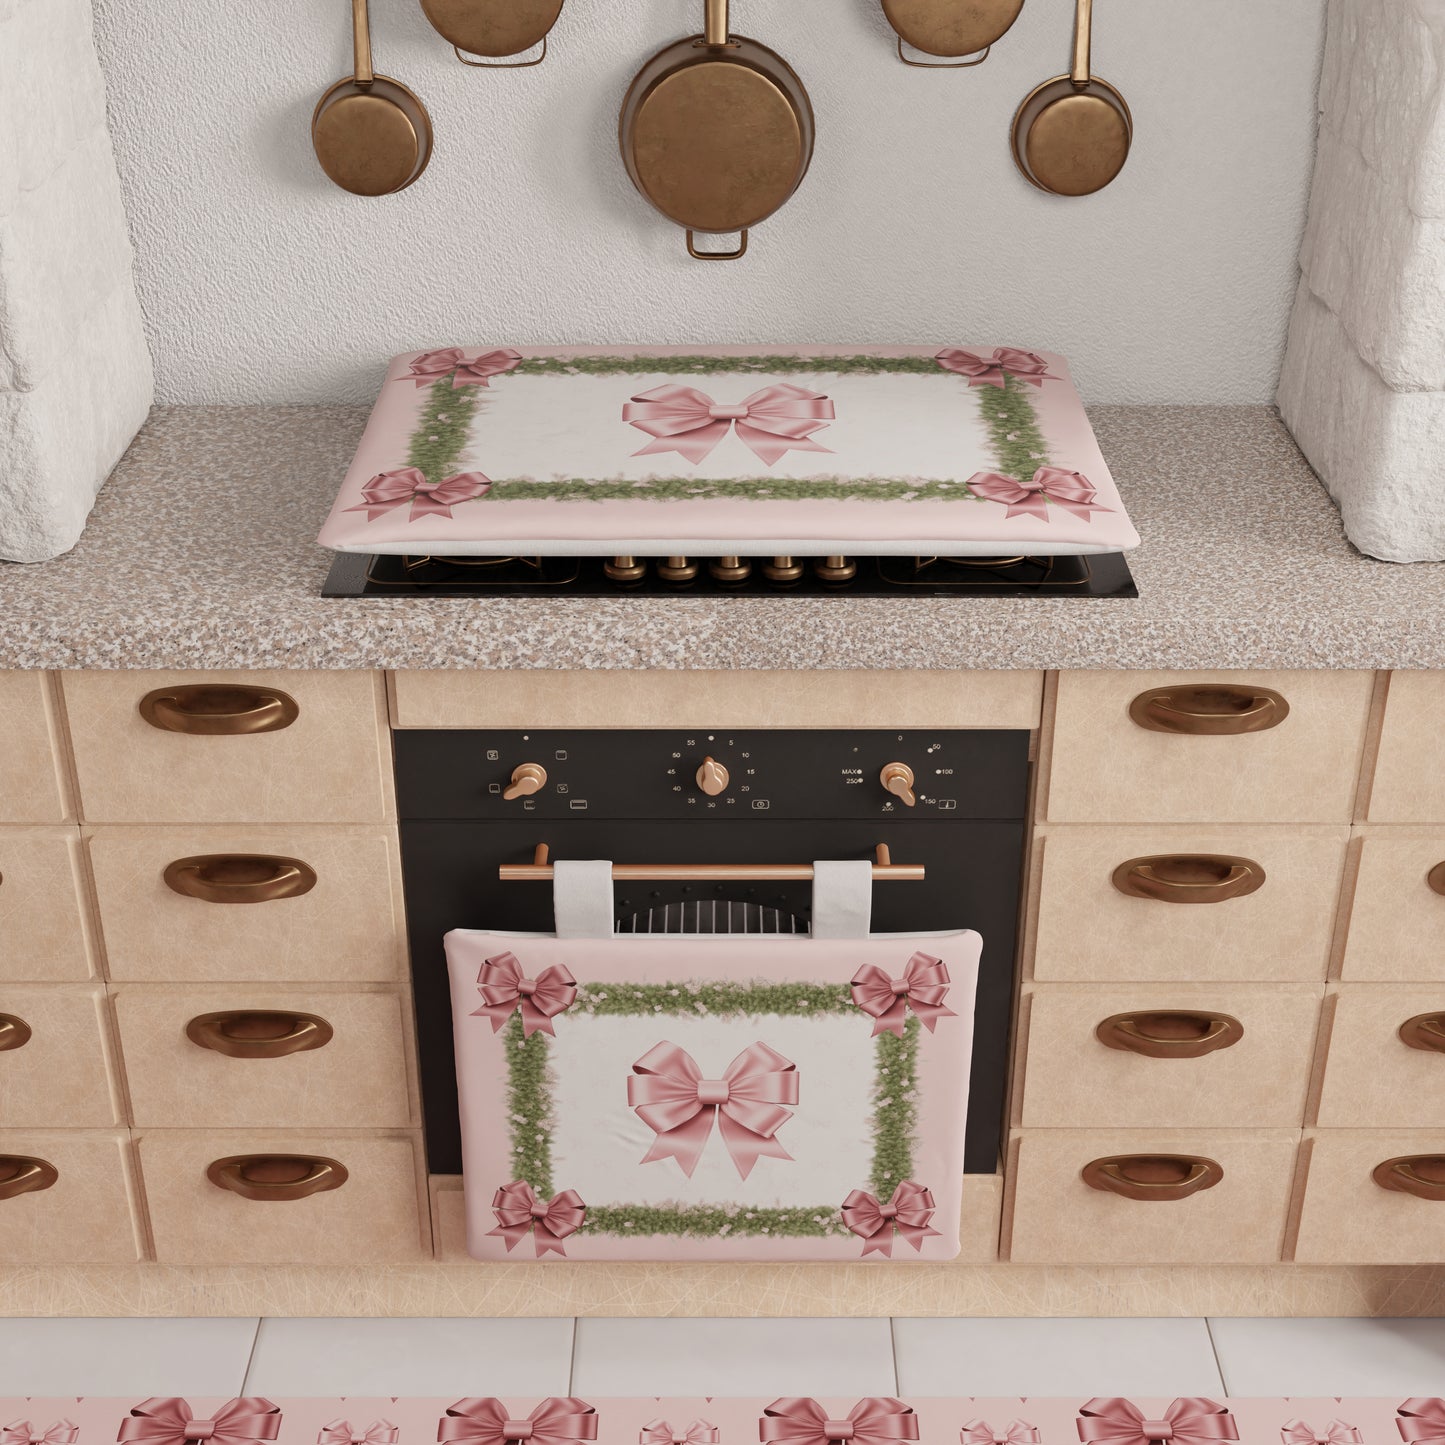 Coprifornello Natalizio Coprifuochi Cucina in Stampa Digitale Fiocco Rosa Piume